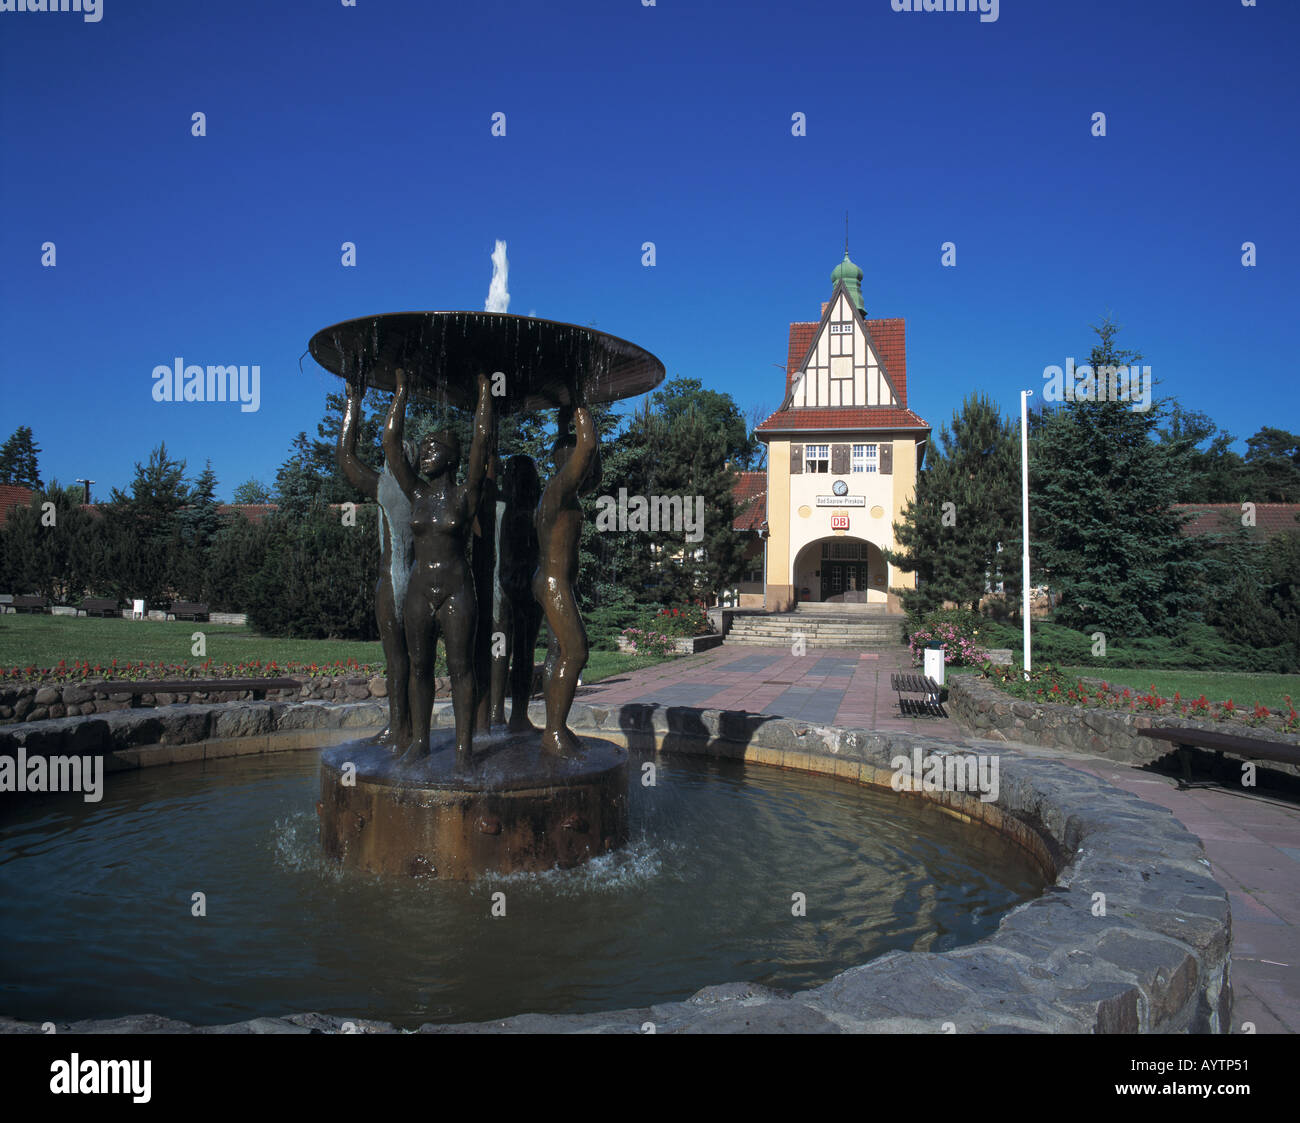 Springbrunnen mit Brunnenfiguren vor dem Bahnhofsgebaeude in Bad Saarow-Pieskow, Scharmuetzelsee, Brandenburg Foto Stock